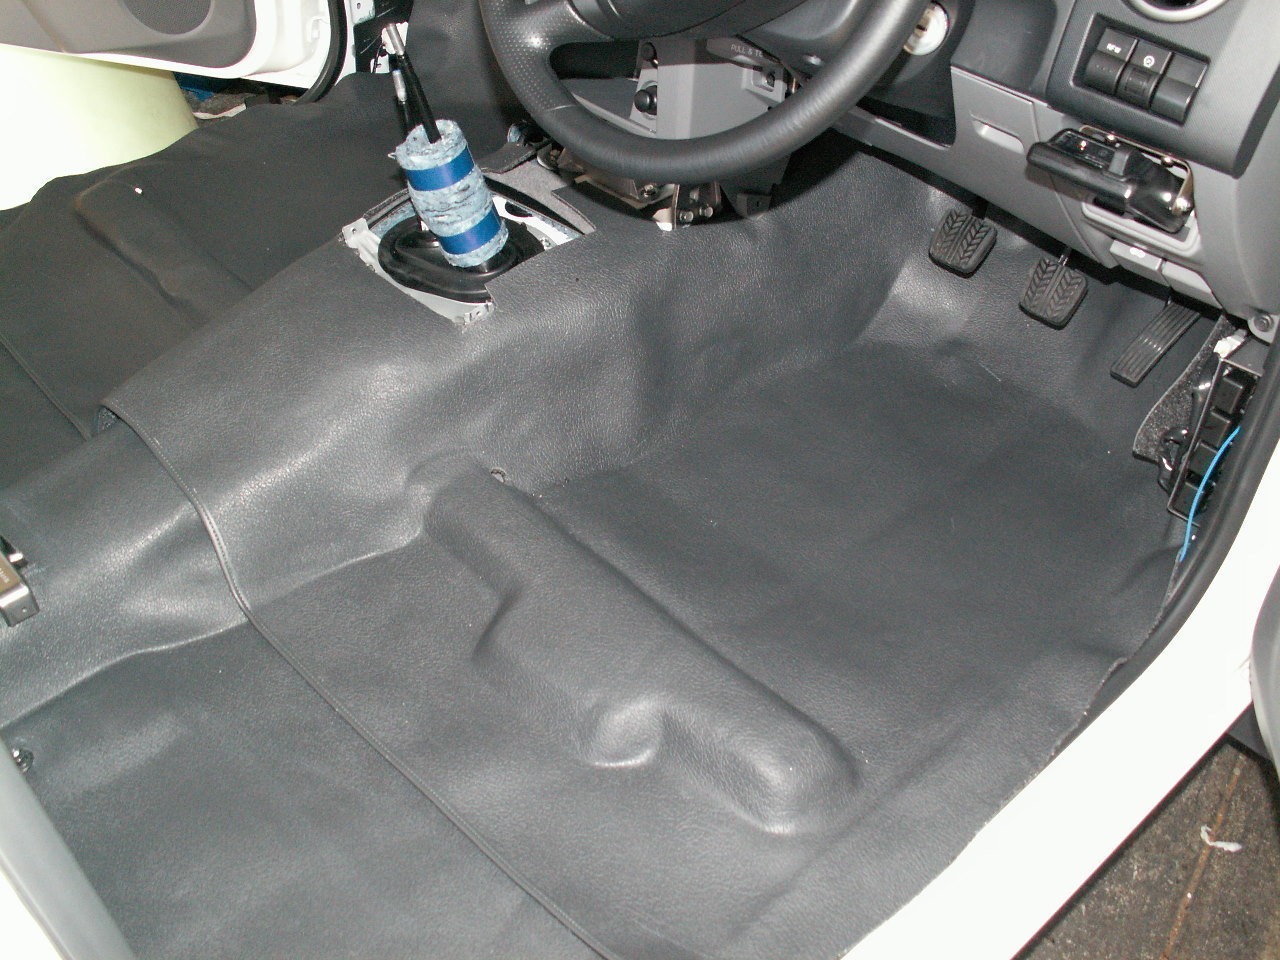 Sandgrabbas Front Floor Mat To Suit Volkswagen Amarok Single & Dual Cab (2011-On)